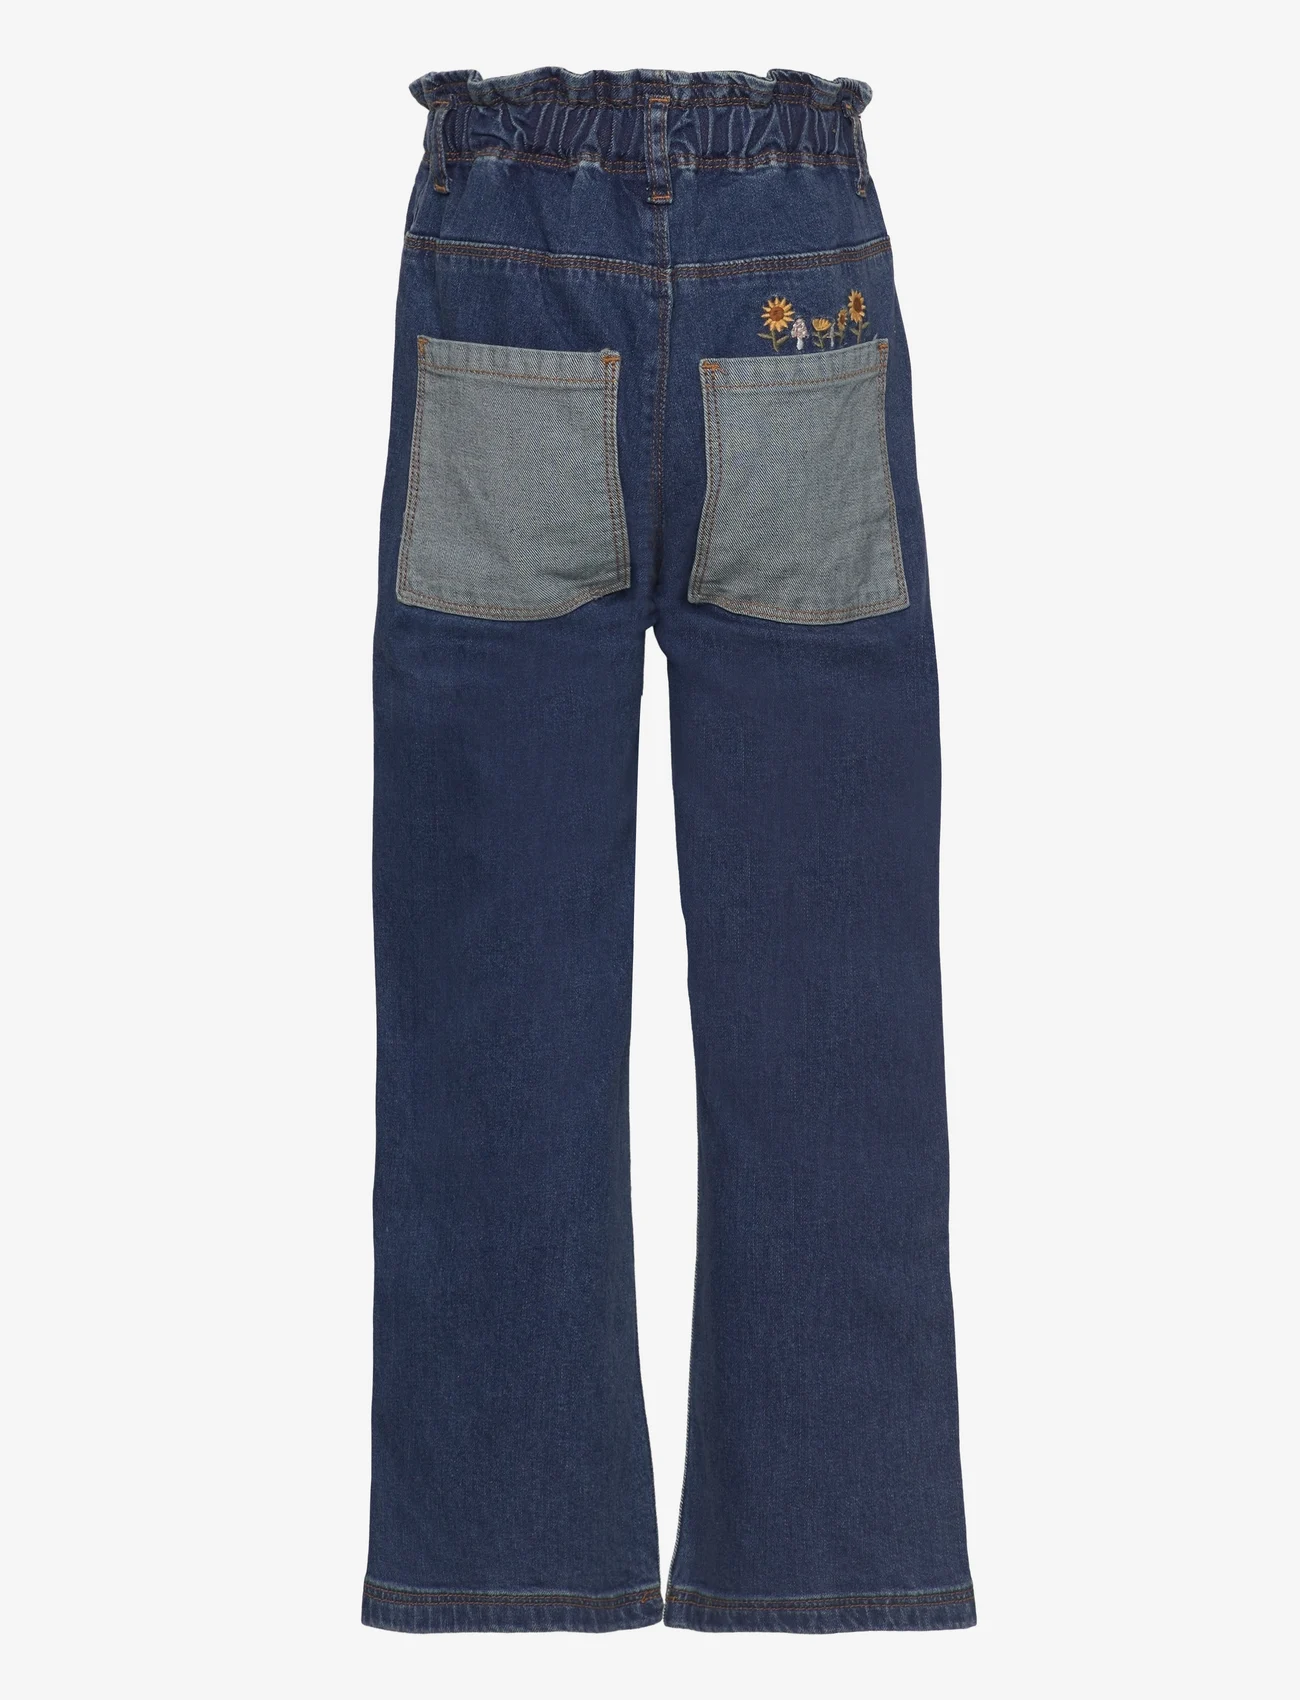 Hust & Claire - Theresa - Jeans - jeans met wijde pijpen - denim - 1